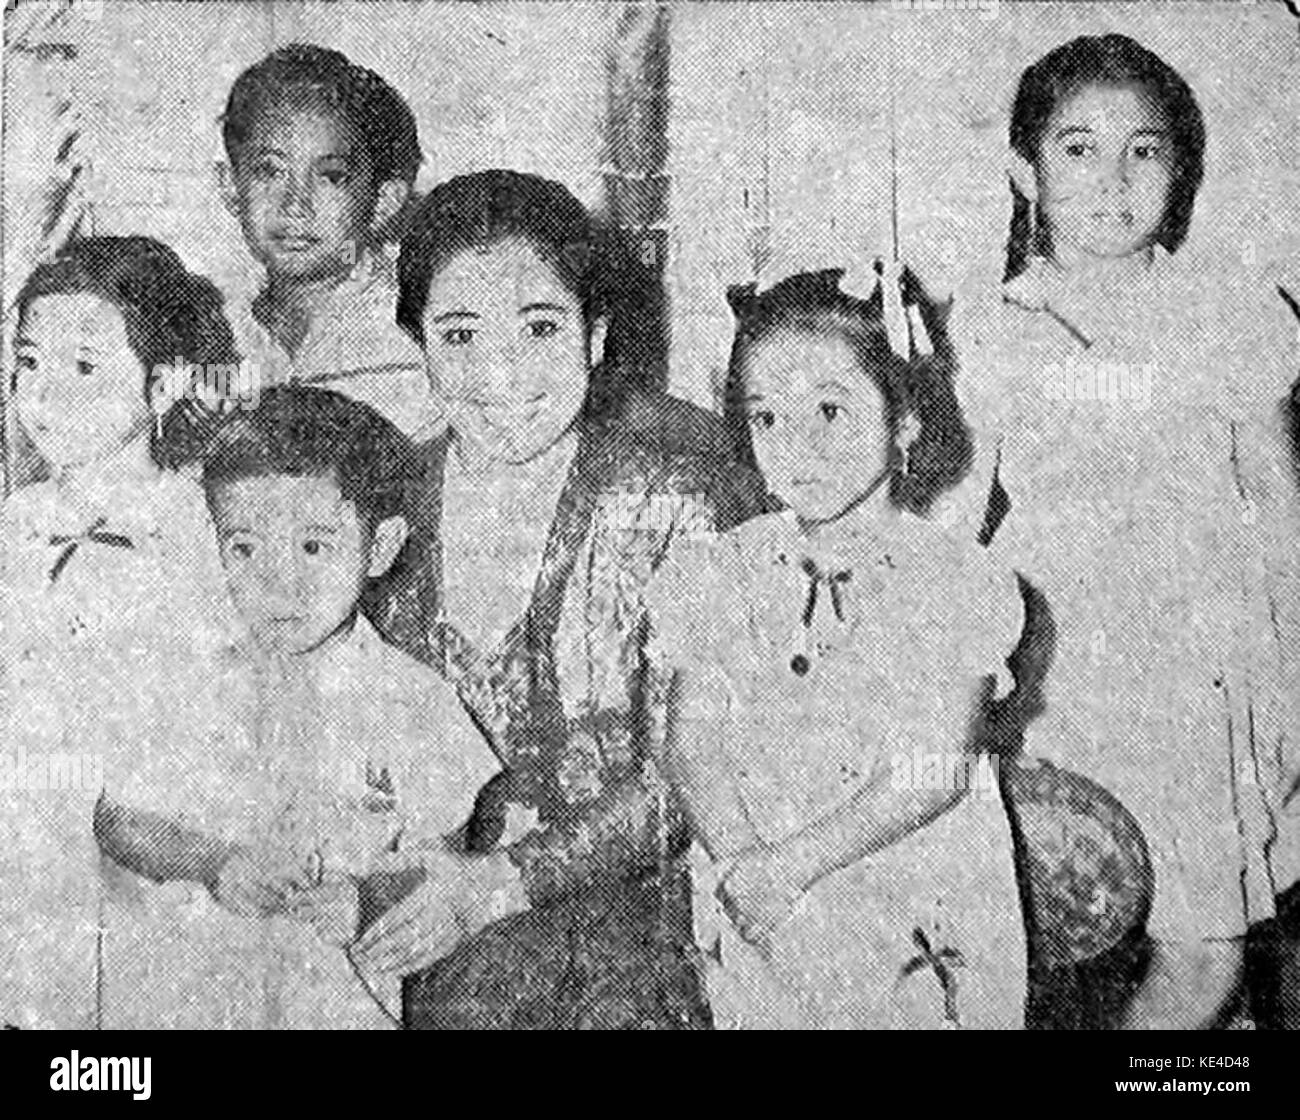 Sukarno family Proklamasi 11 February 1956 p1 Stock Photo